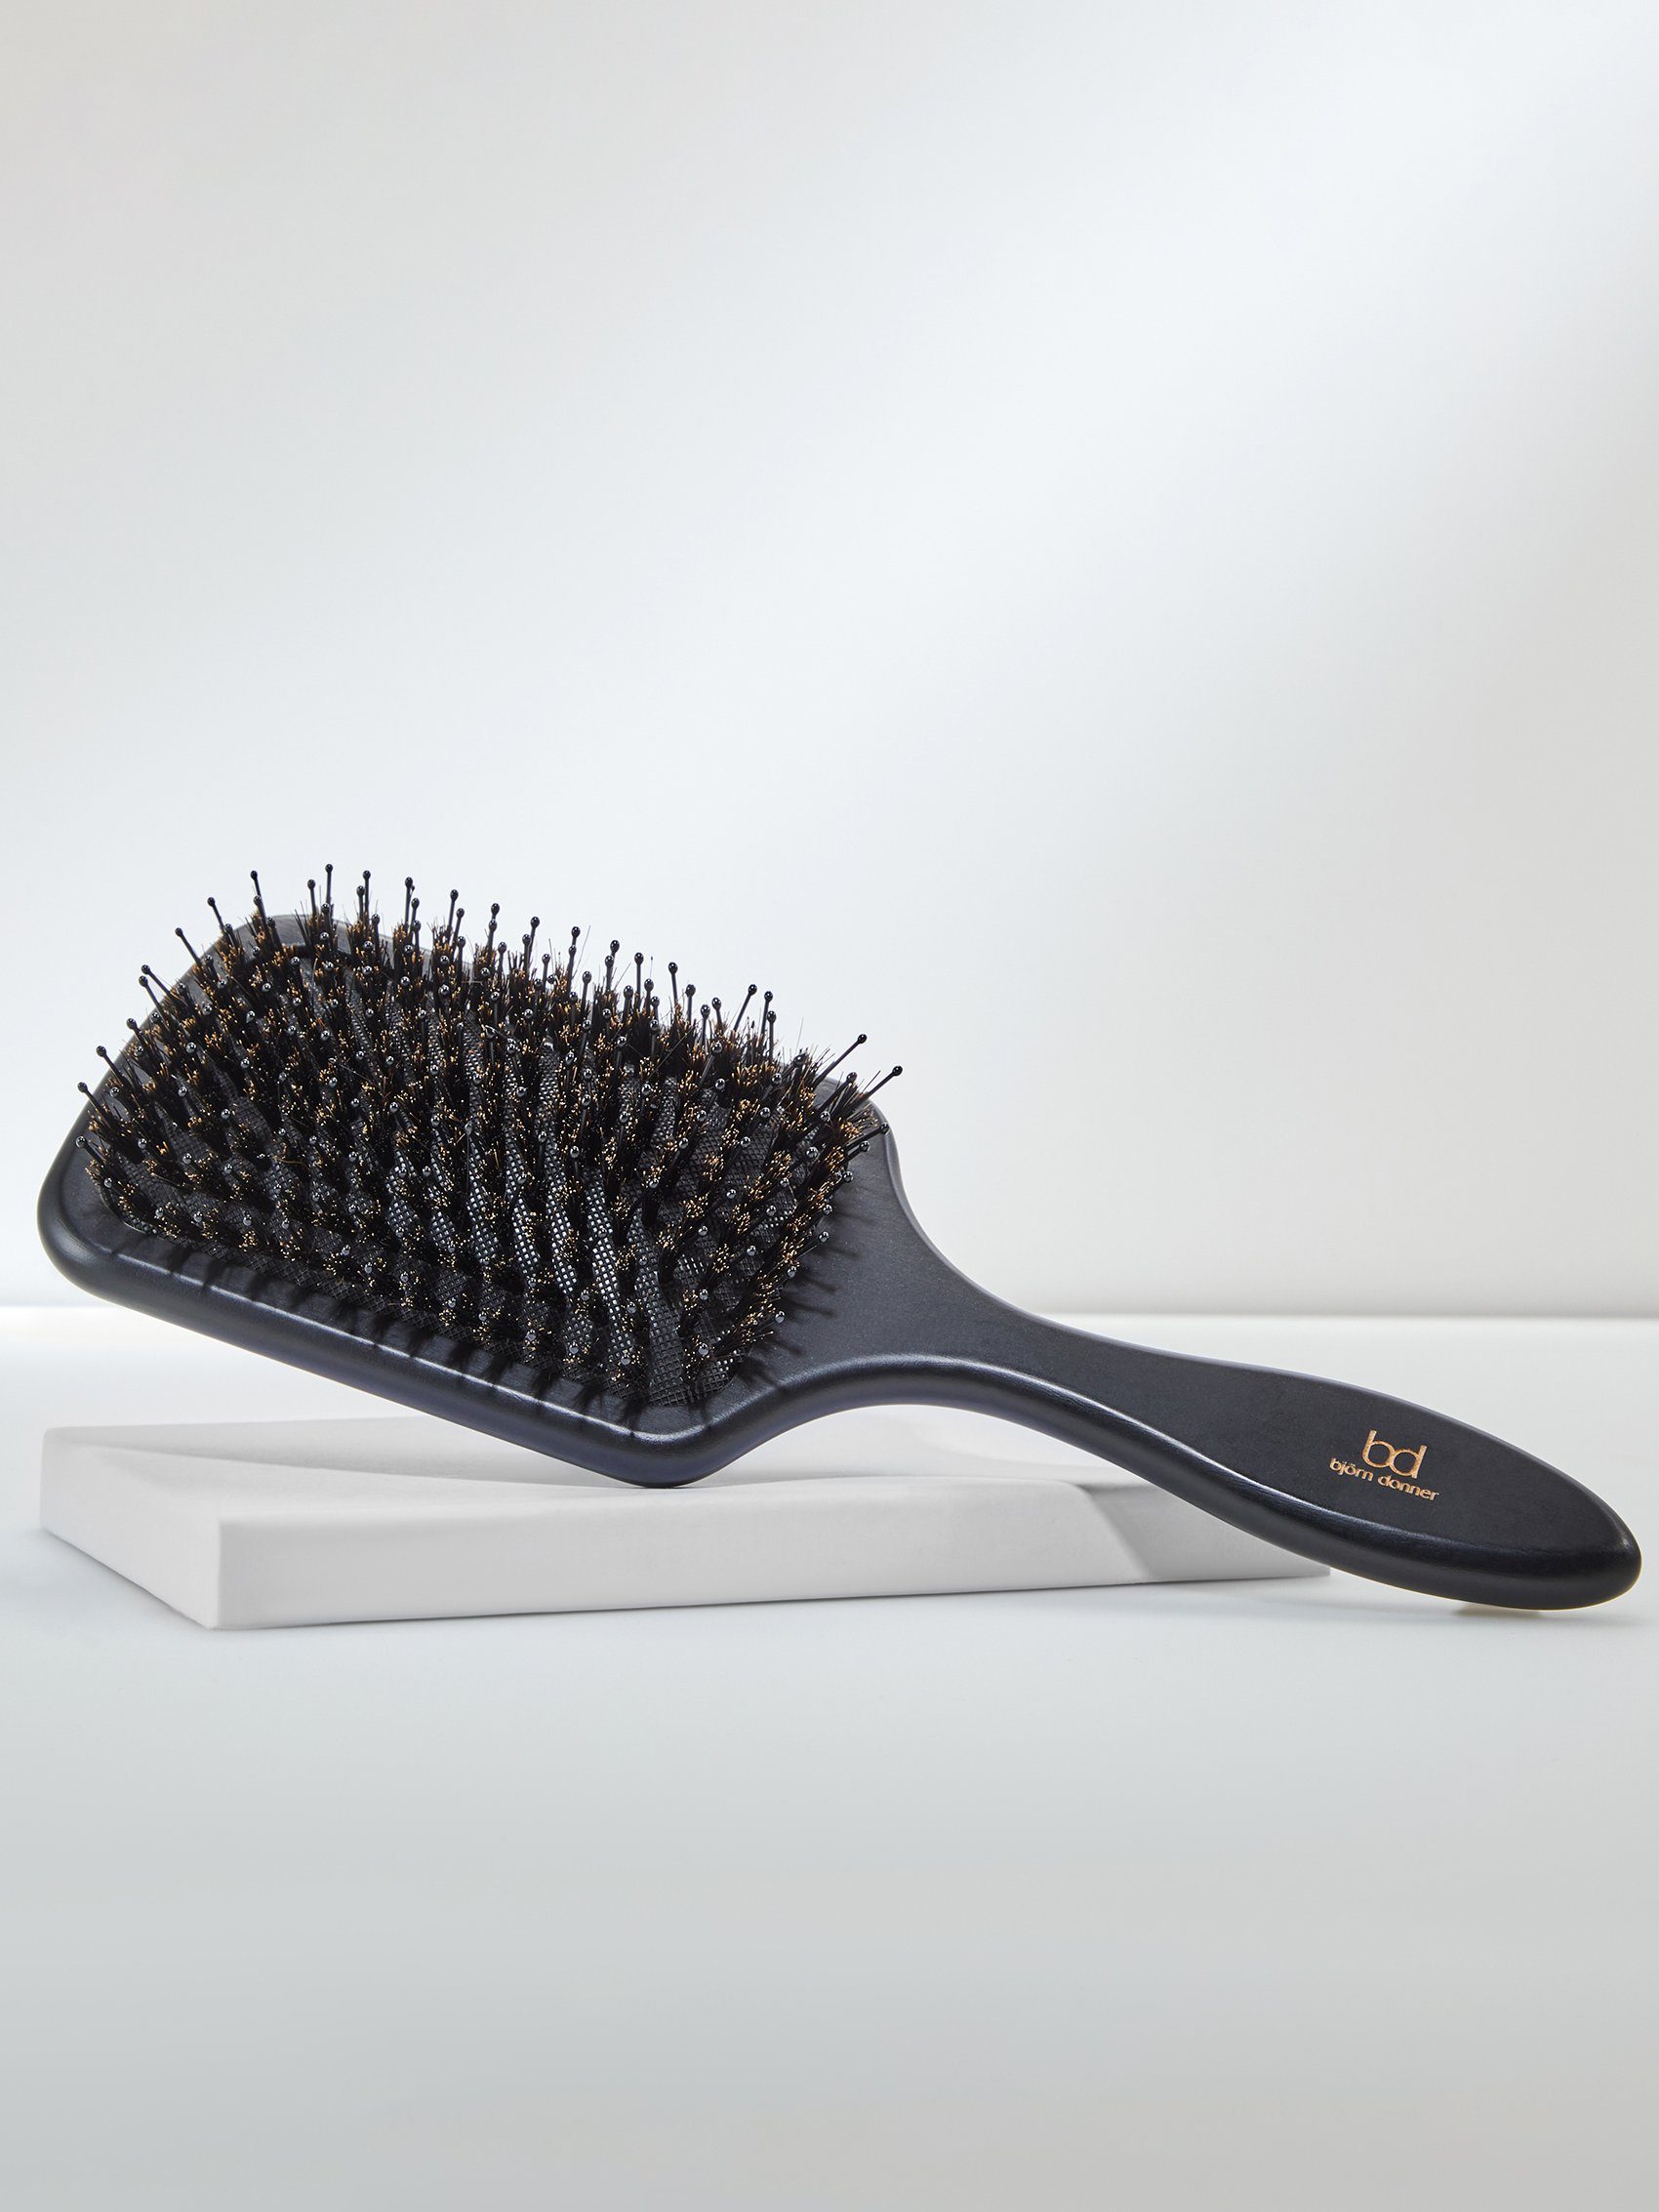 Björn Donner Haarbürste "Paddle Brush", Nylonstiften Glanz im Wildschweinborsten benoppten Haar & mit für mehr